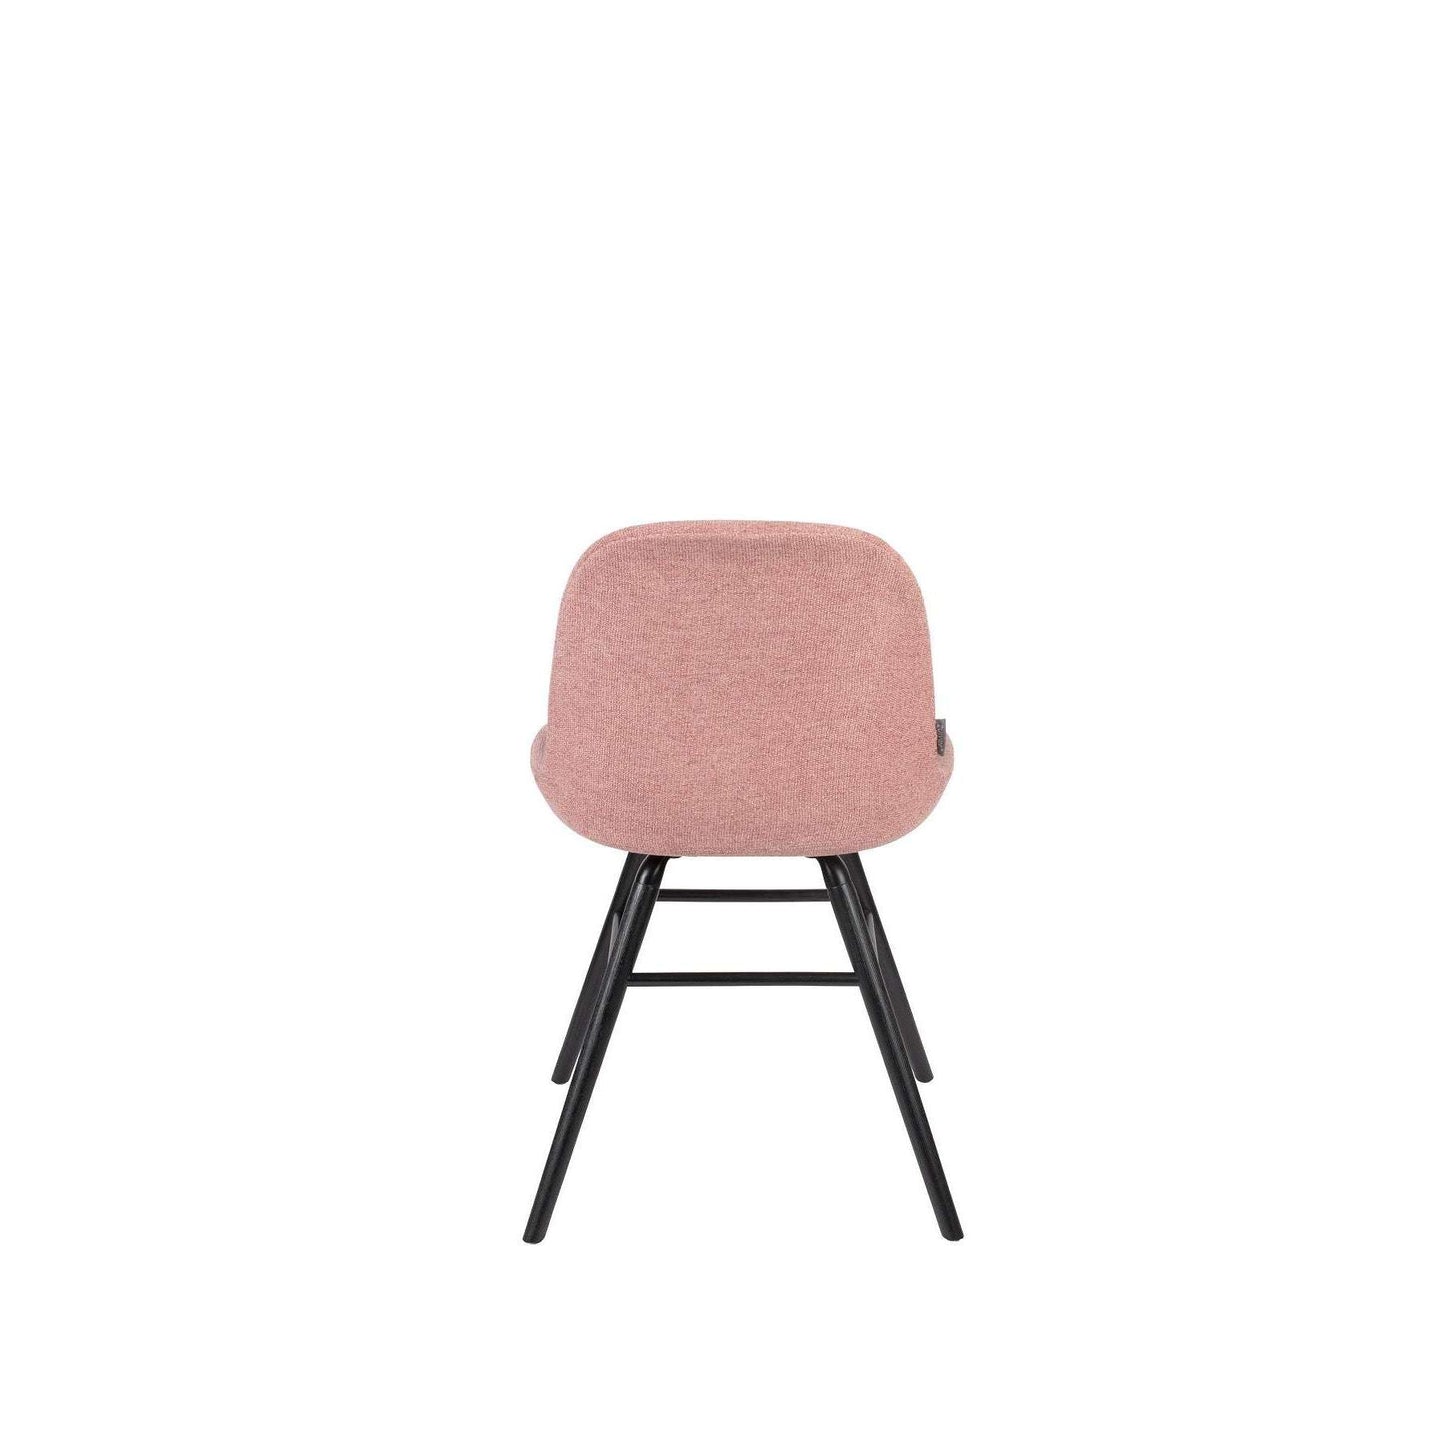 Zuiver stoel albert kuip soft roze 55 x 49 x 81,5 cm